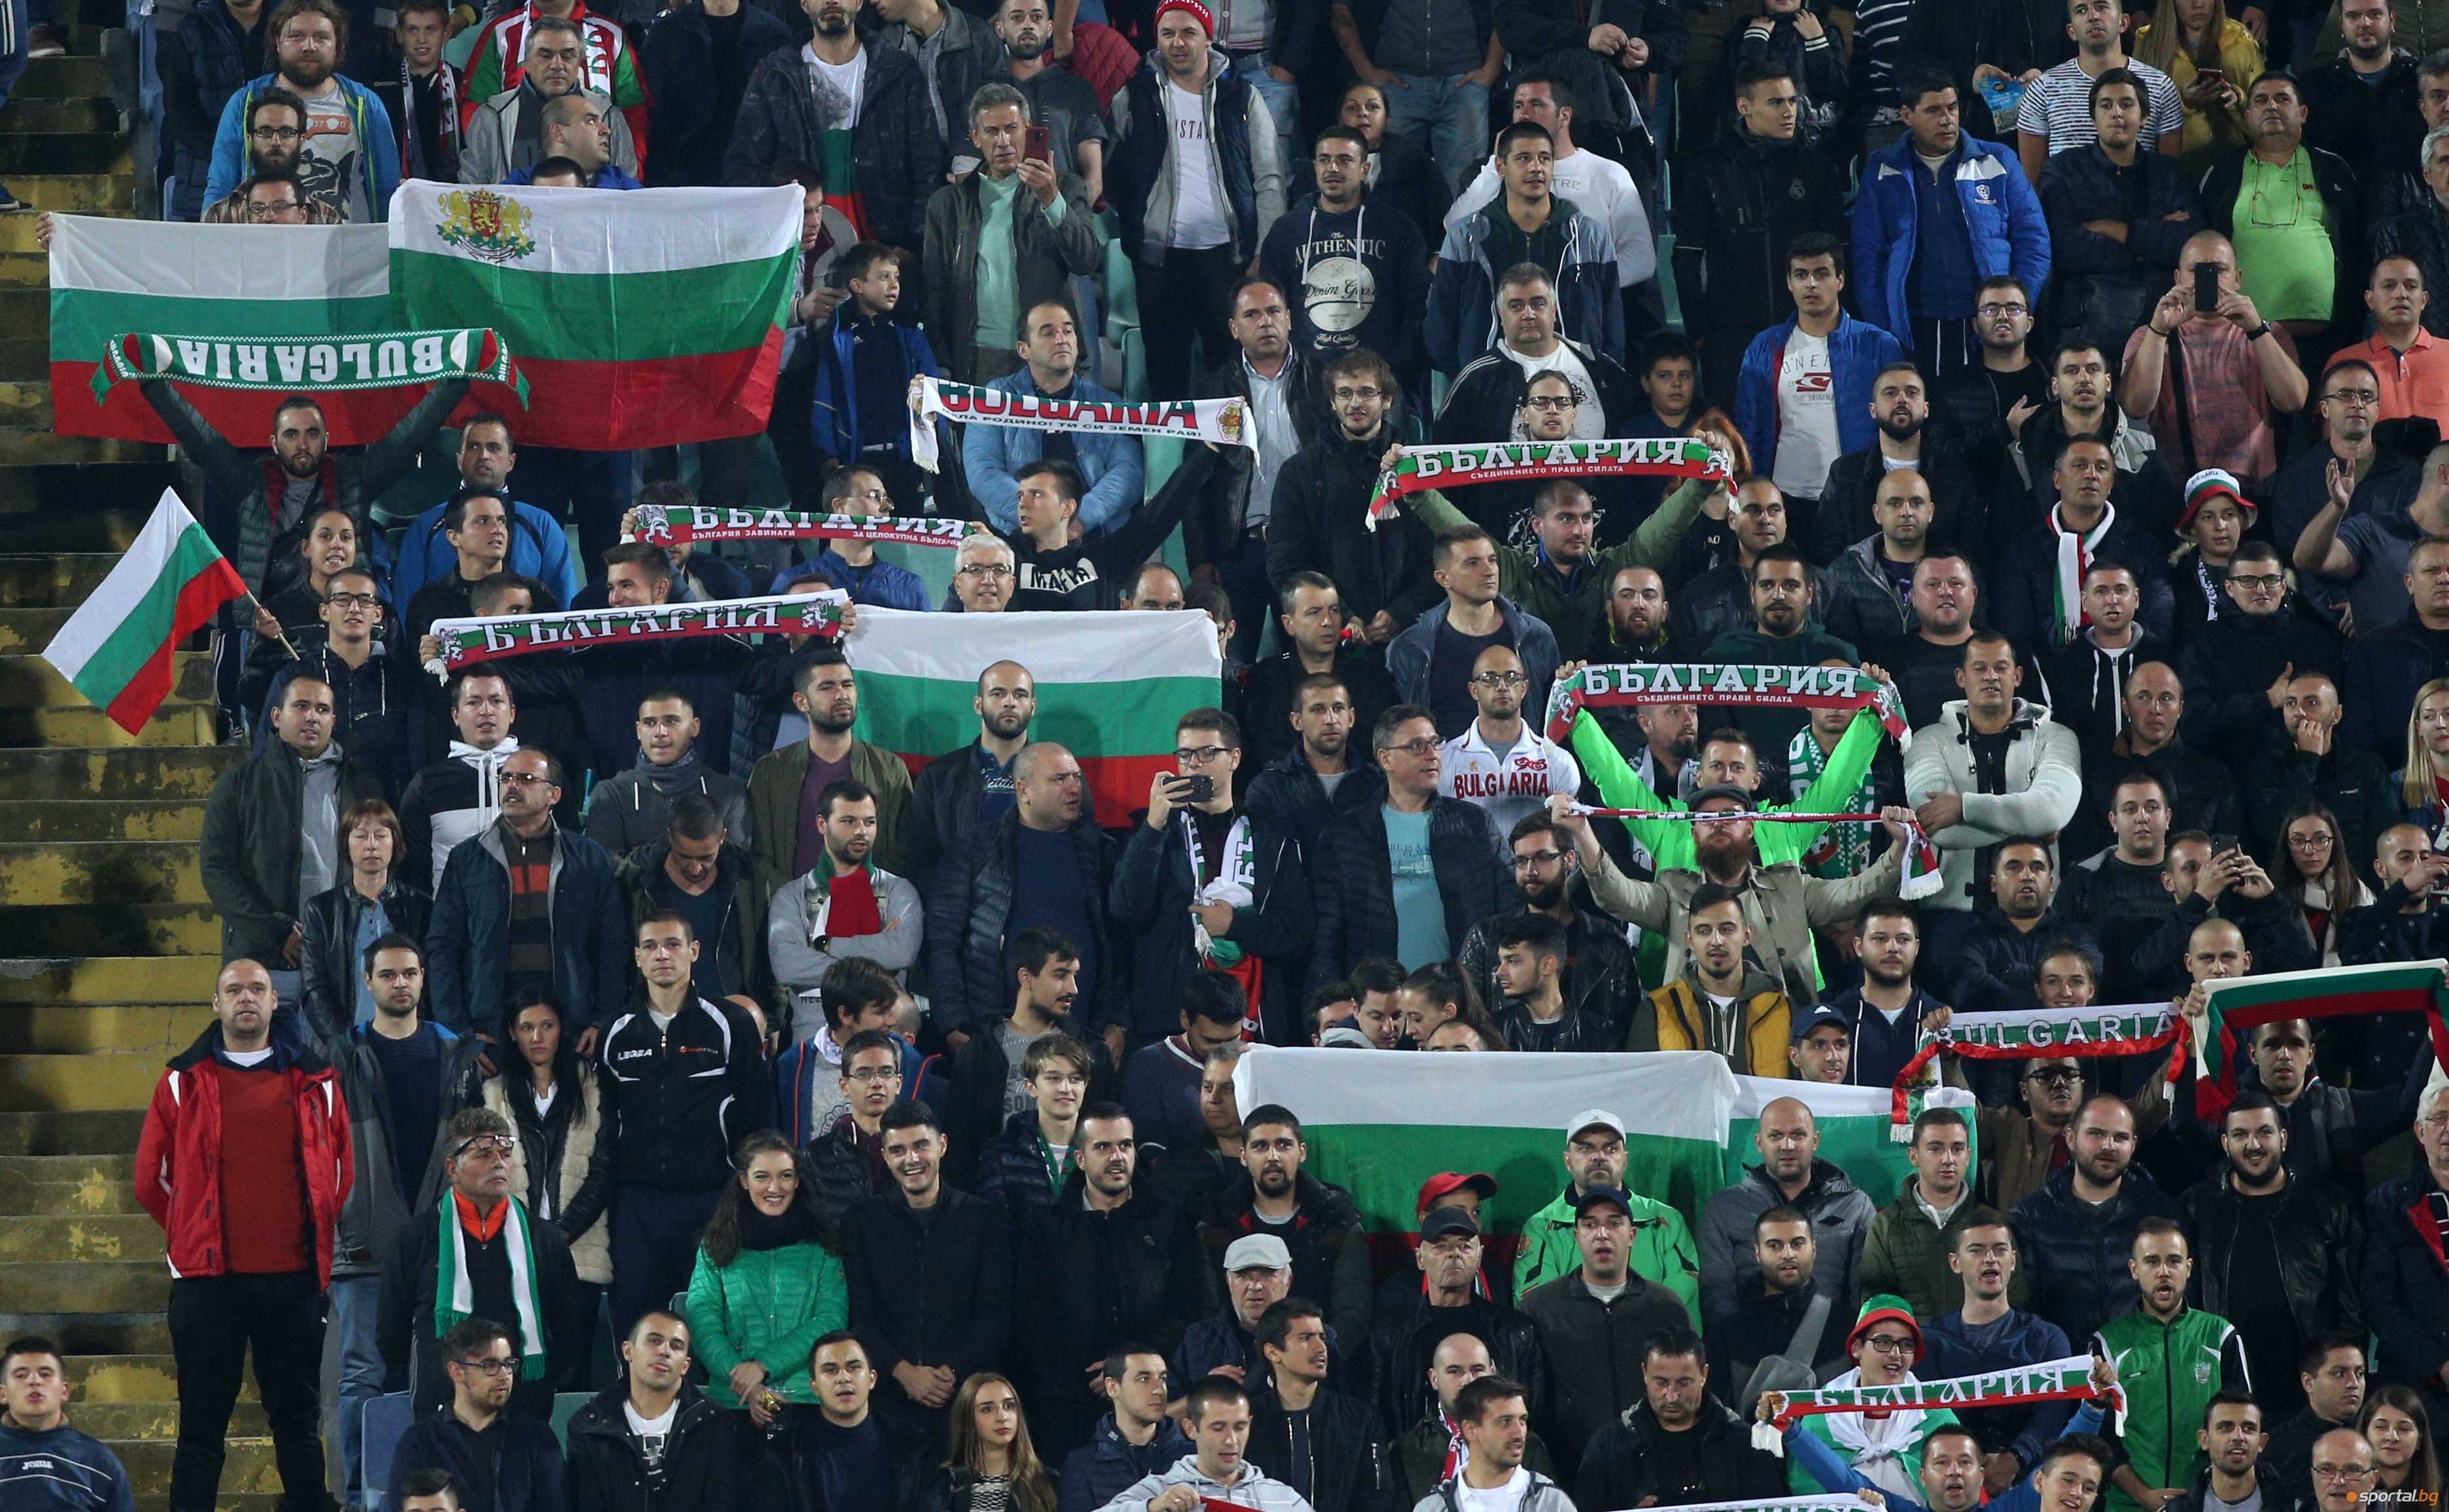 Наказанието наложено от УЕФА на България заради расистките изстъпления на